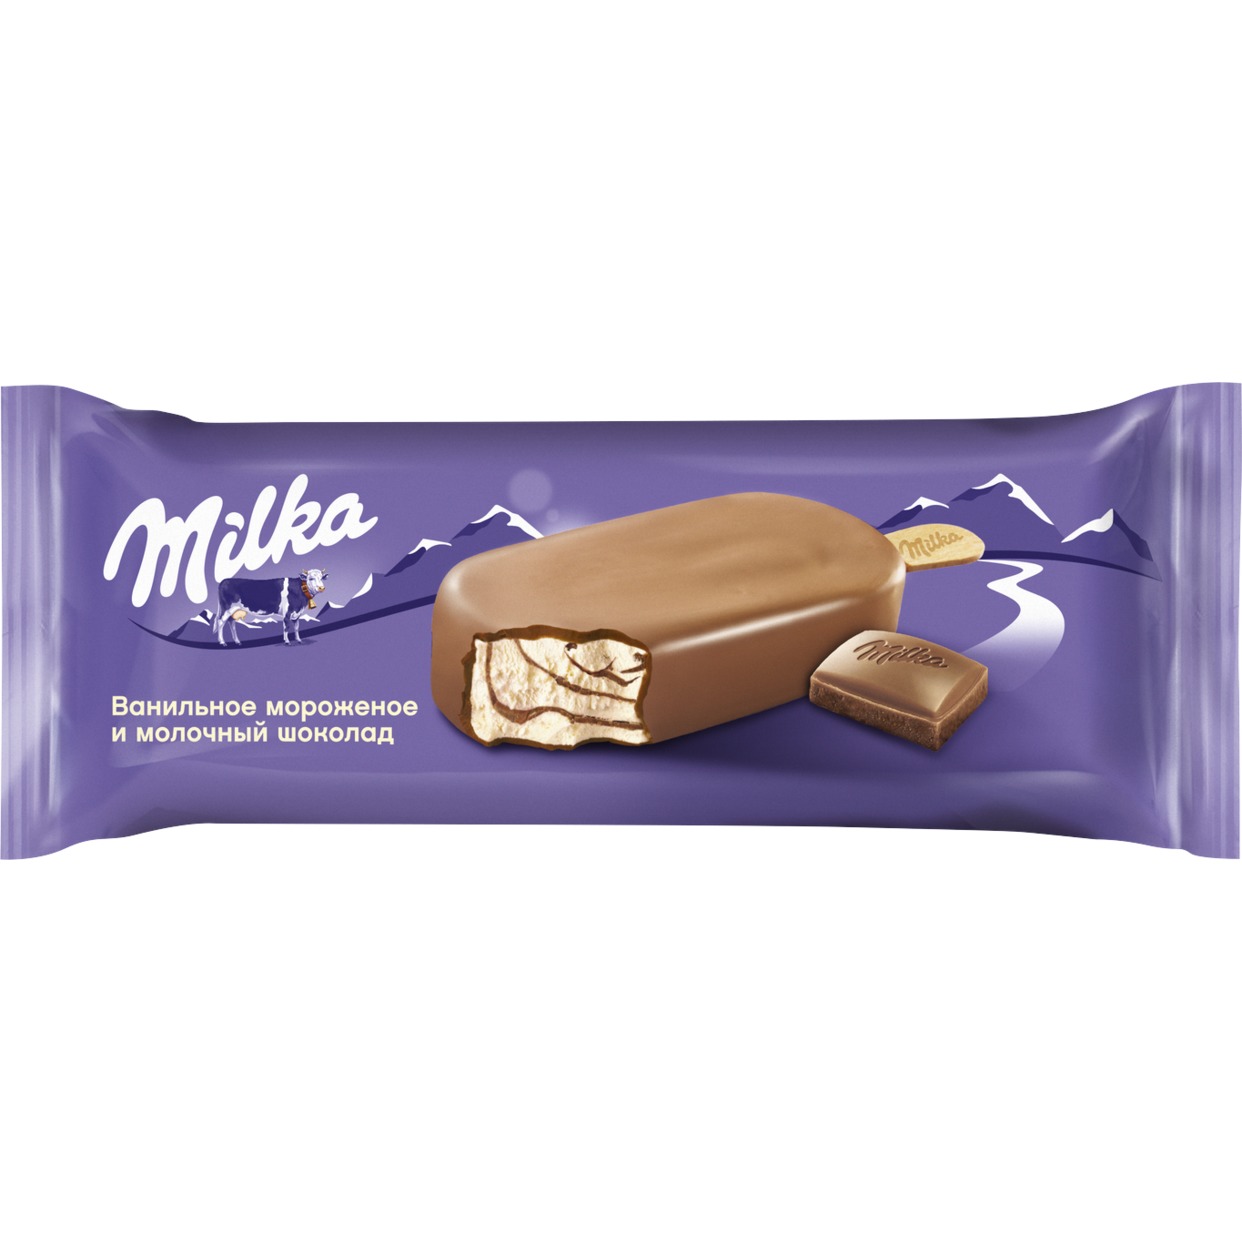 MILKA БЗМЖ Мороженое эскимо сливочное ванильное с шоколадным соусом, покрытое молочным шоколадом MILKA МДЖ 8%, 62 г по акции в Пятерочке